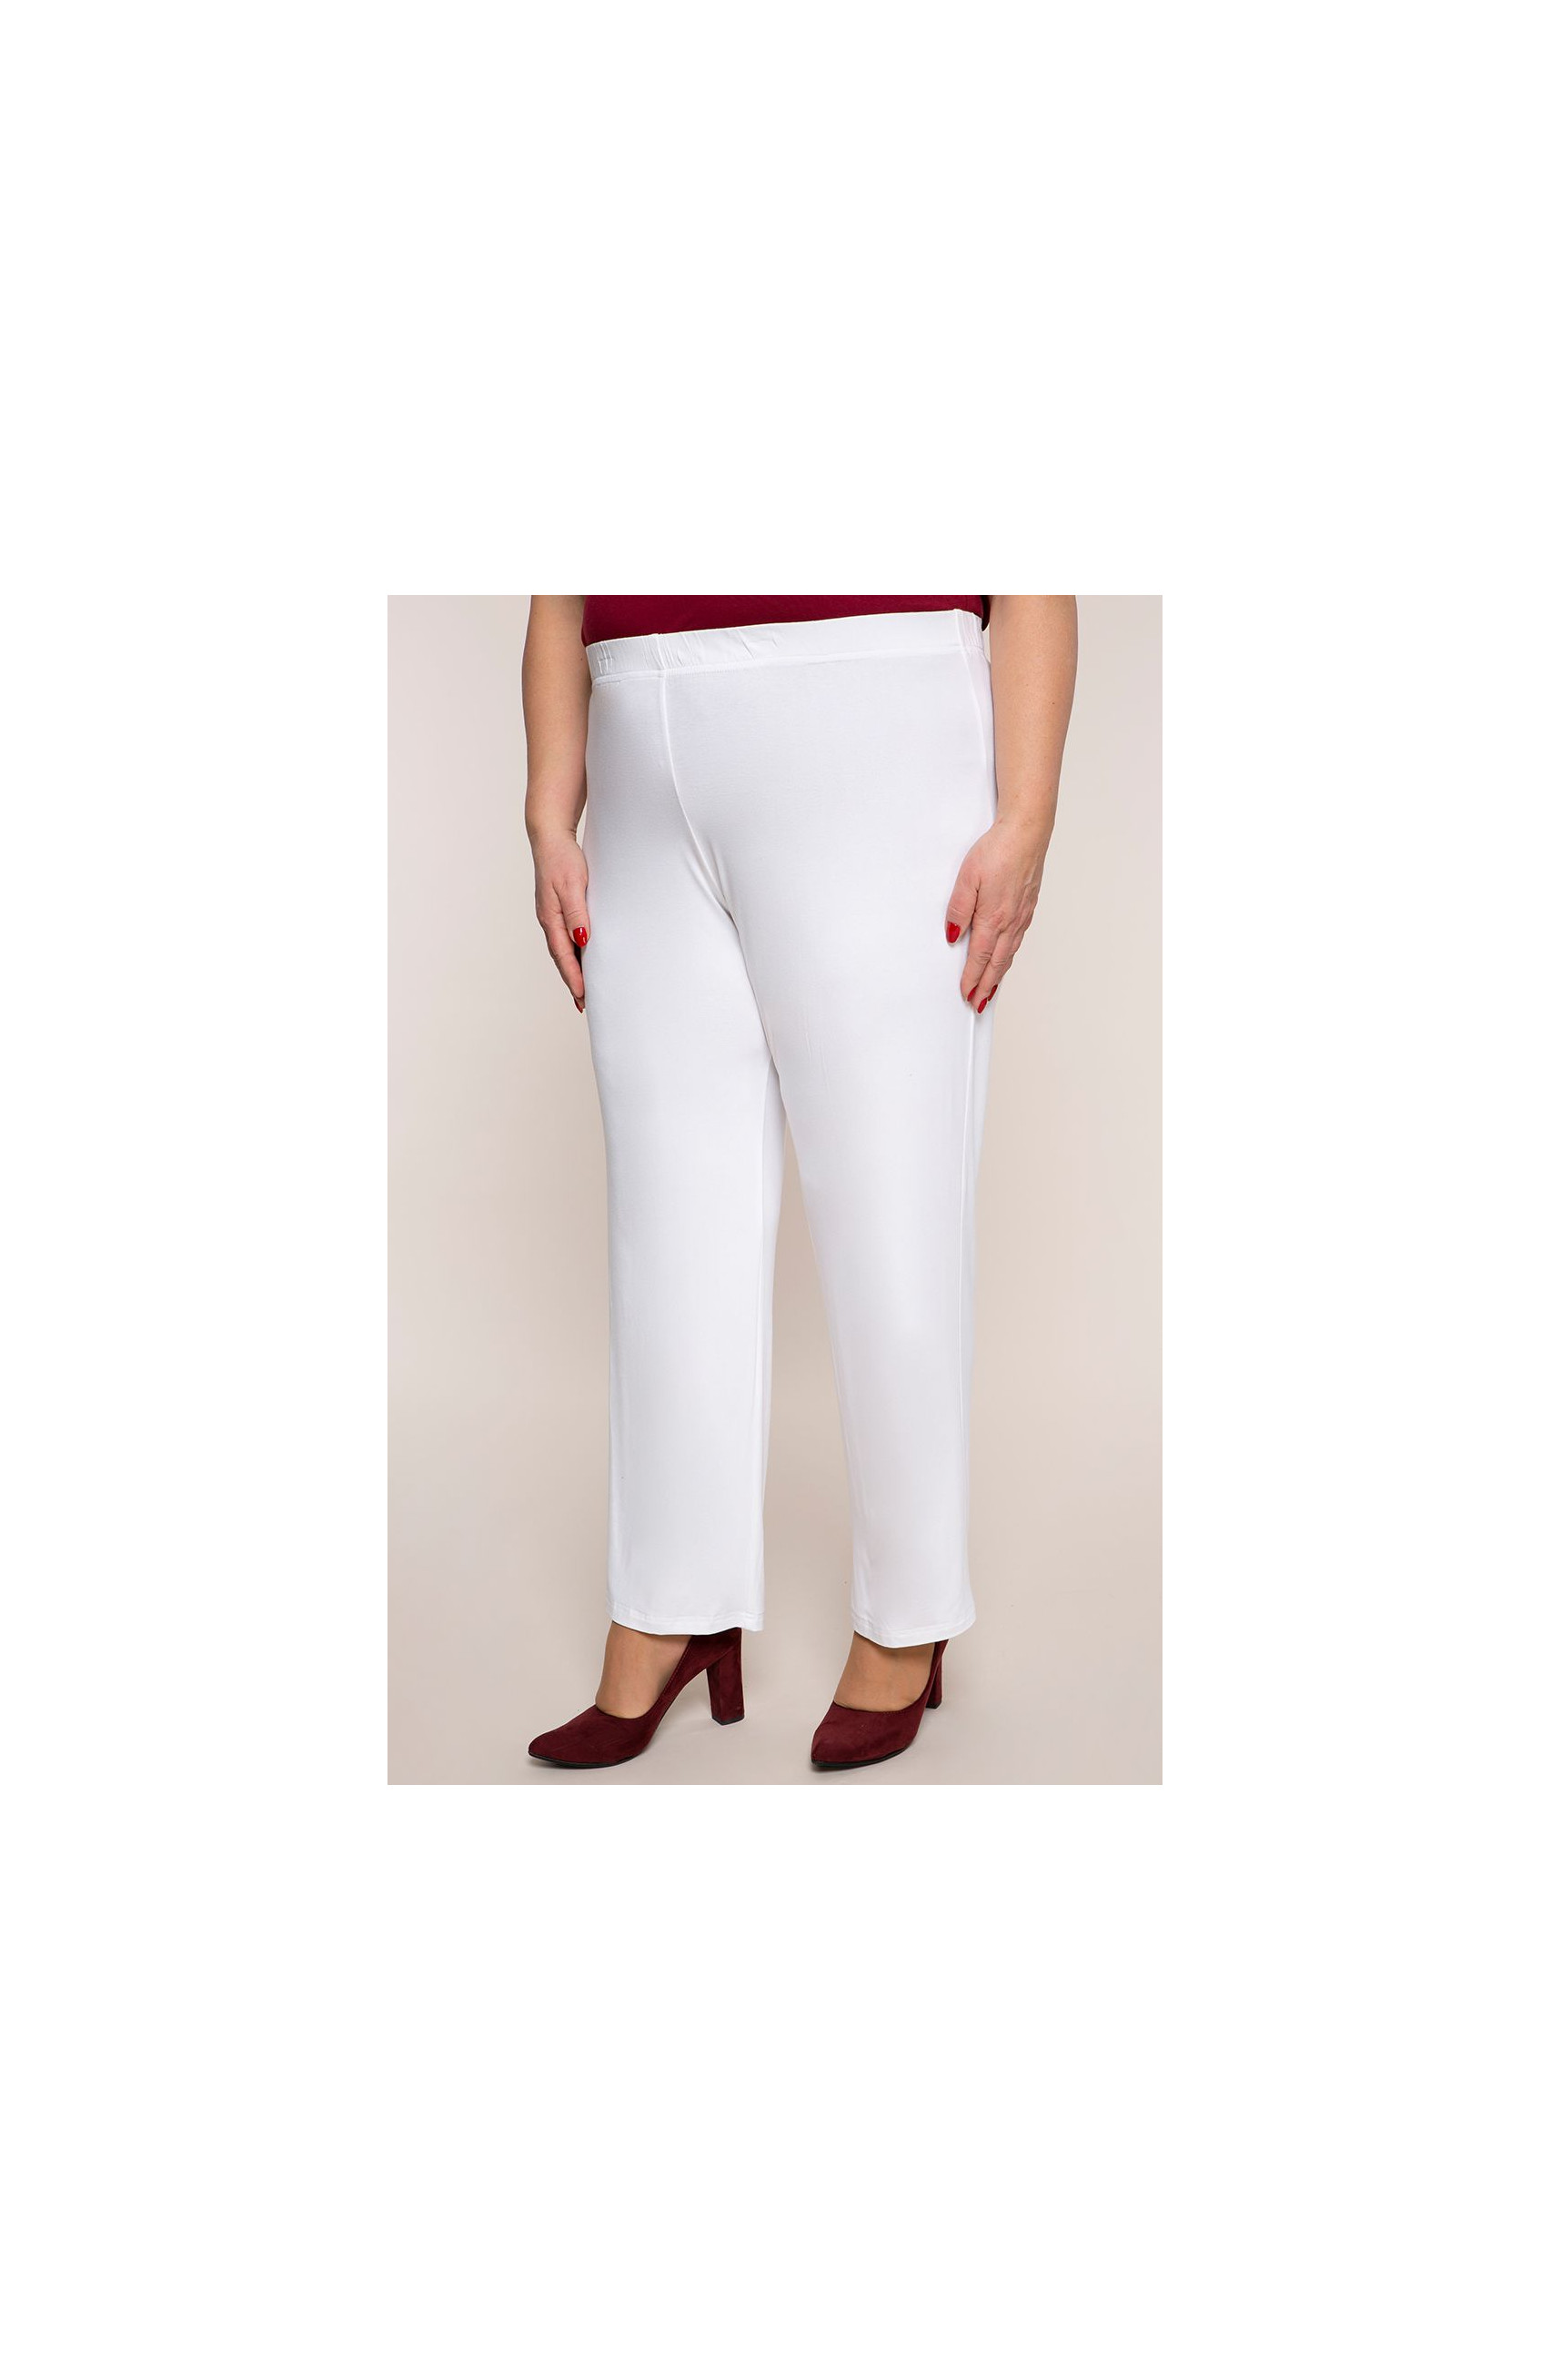 Класически тънки бели панталони